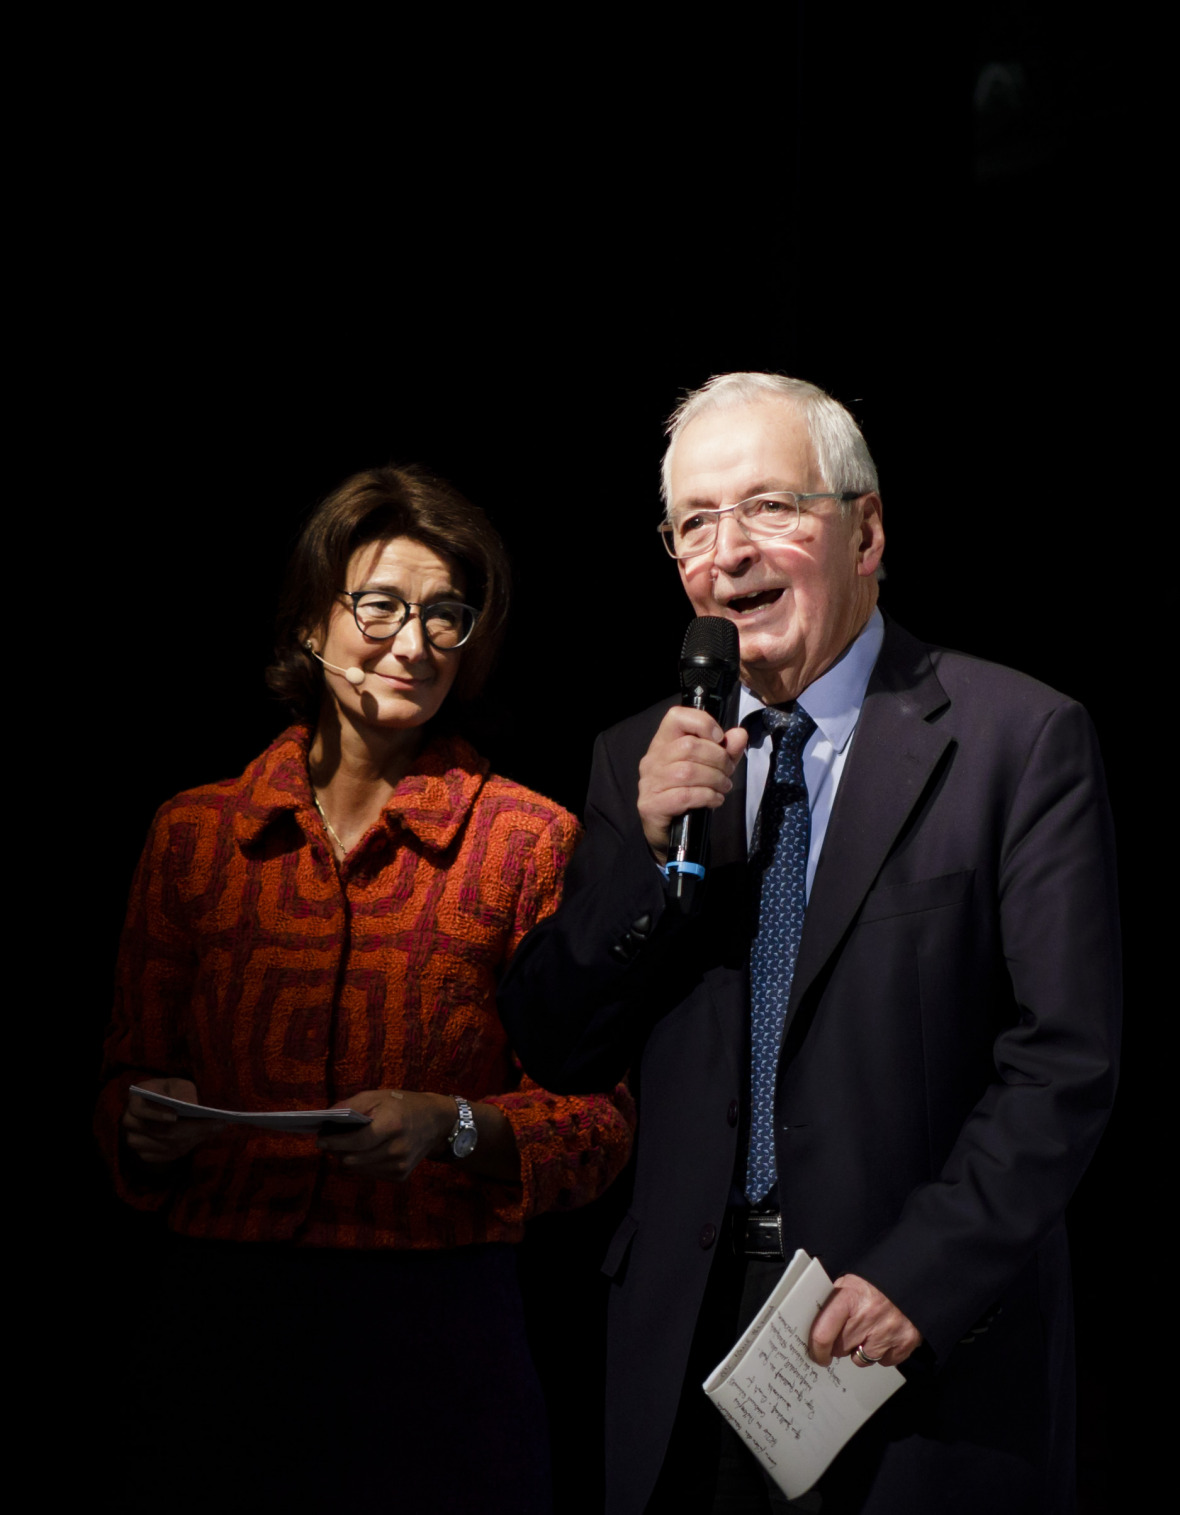 Patrizia Nanz und Klaus Töpfer beklagten eine Krise der Institutionen, Vertrauensverlust in Demokratie, sinkende Autorität von Rechtsstaatlichkeit und Wissenschaft.